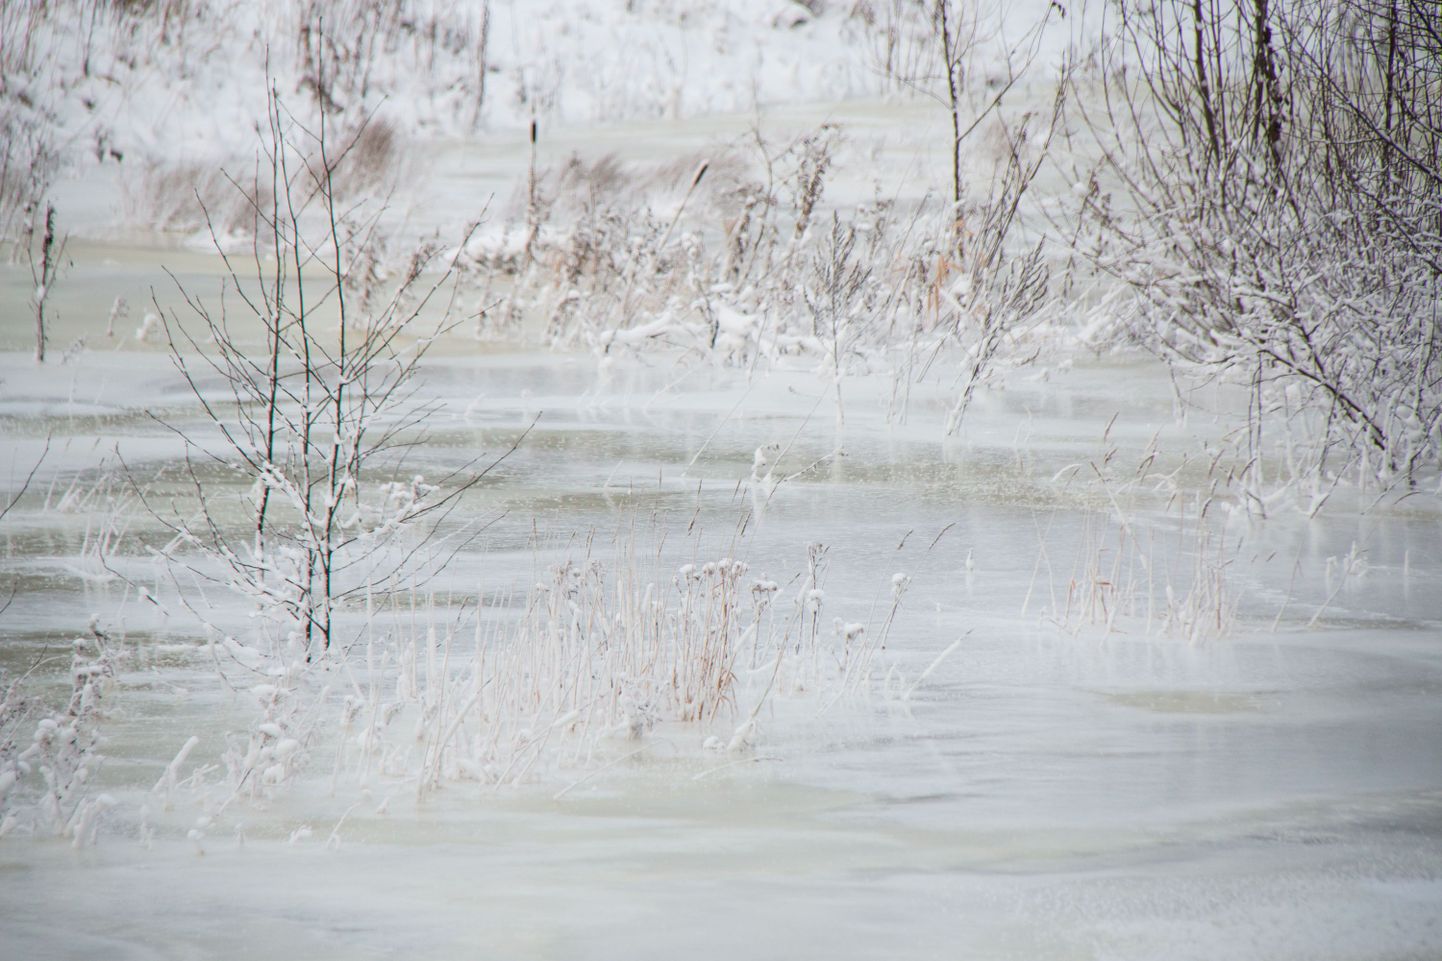 külmunud jõgi. Foto on illustratiivne